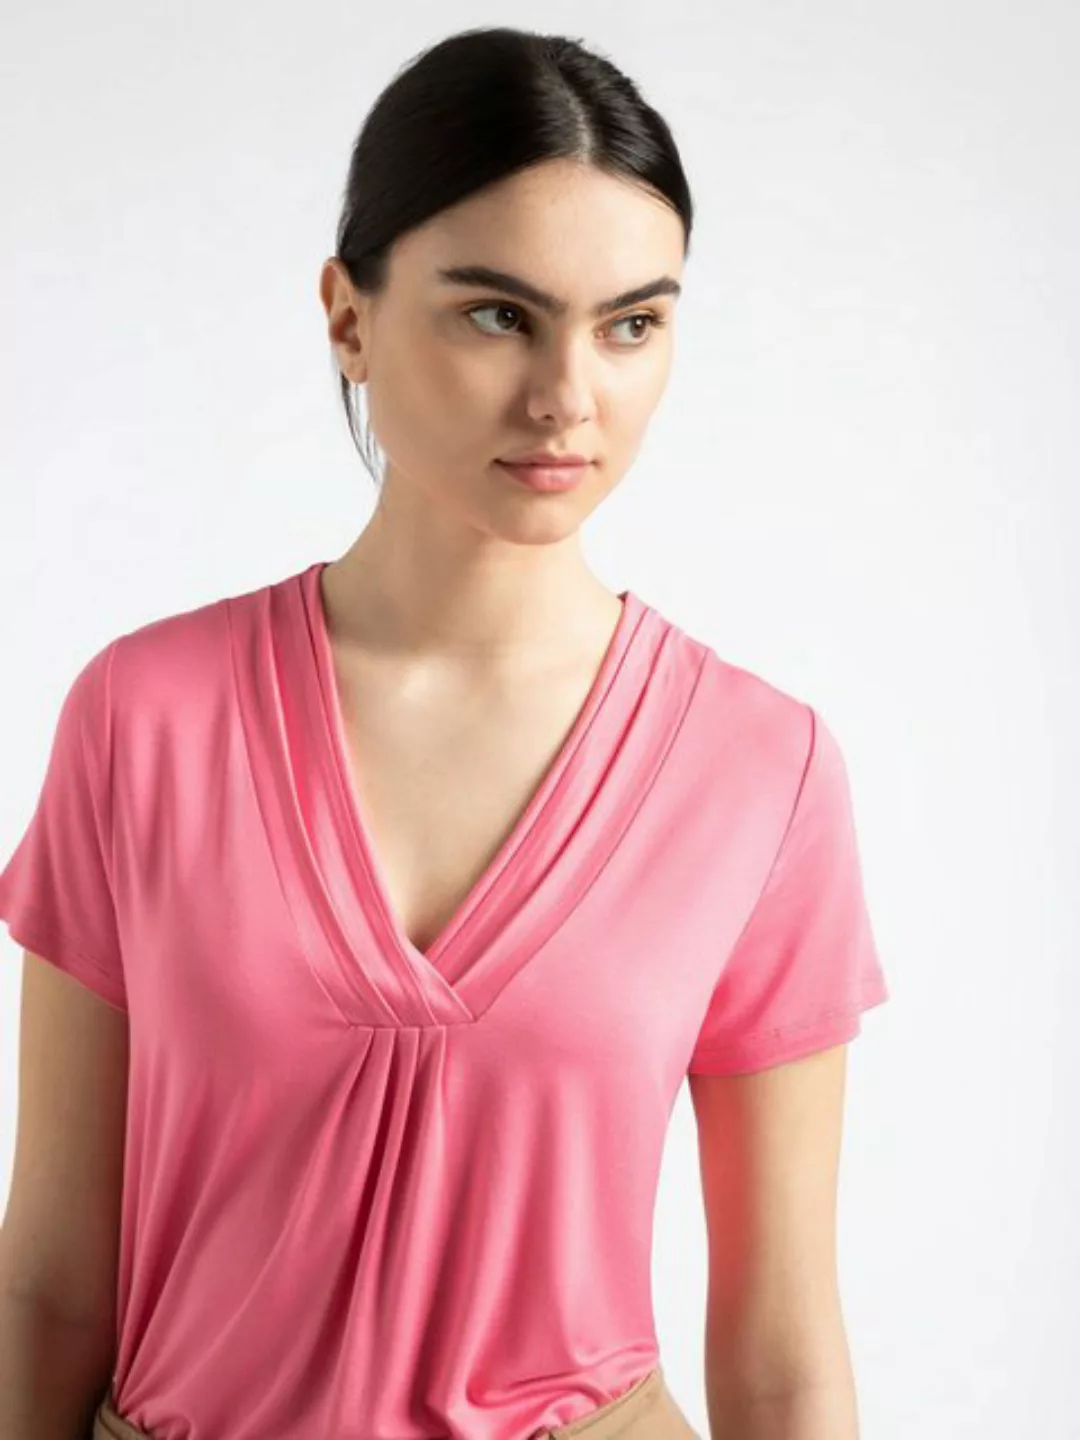 T-Shirt mit V-Ausschnitt, sorbet pink, Sommer-Kollektion günstig online kaufen